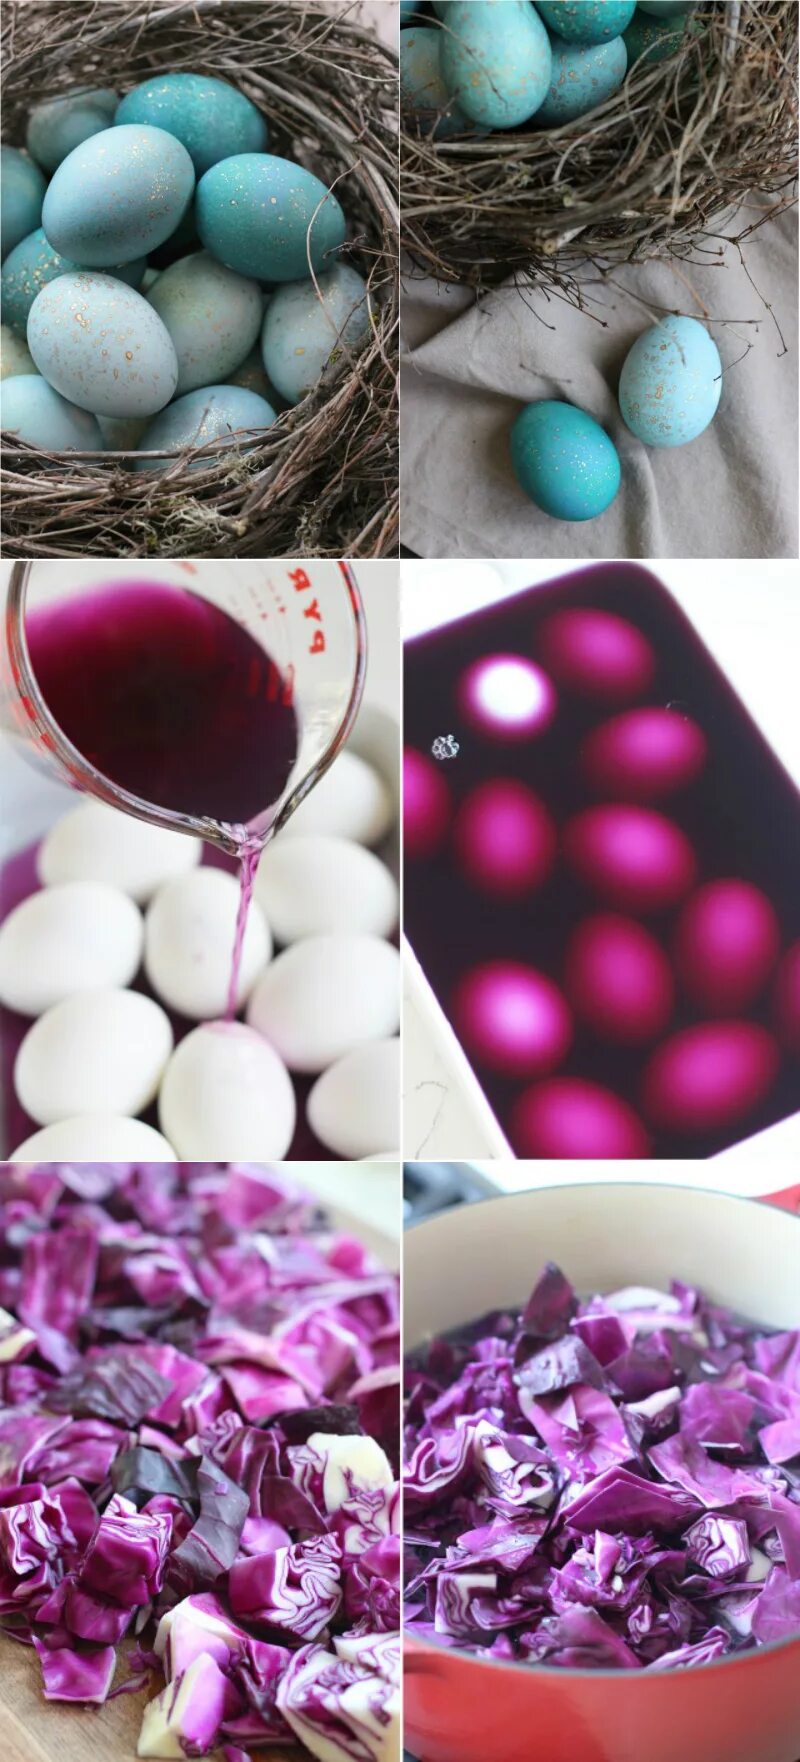 Краска для яиц. Краска для пасхальных яиц. Идеи покраски яиц. Способы окраски яиц на Пасху.